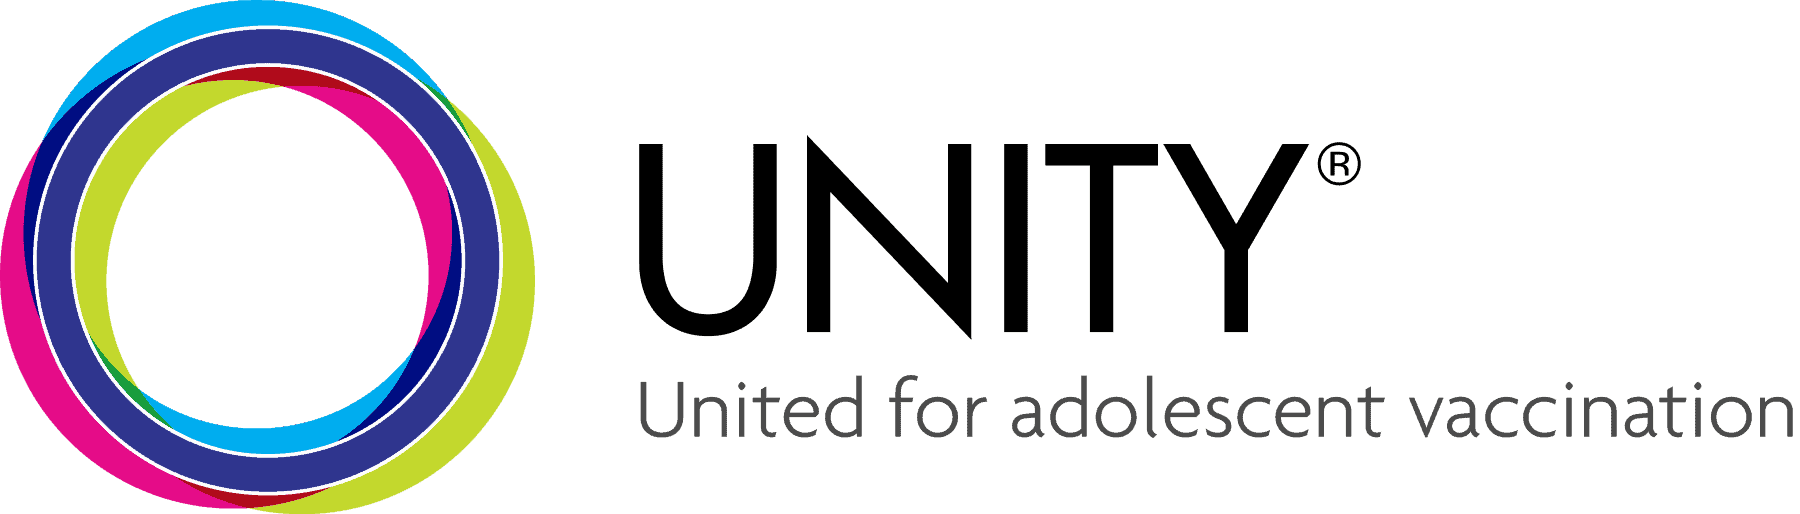 unity-logo-dark